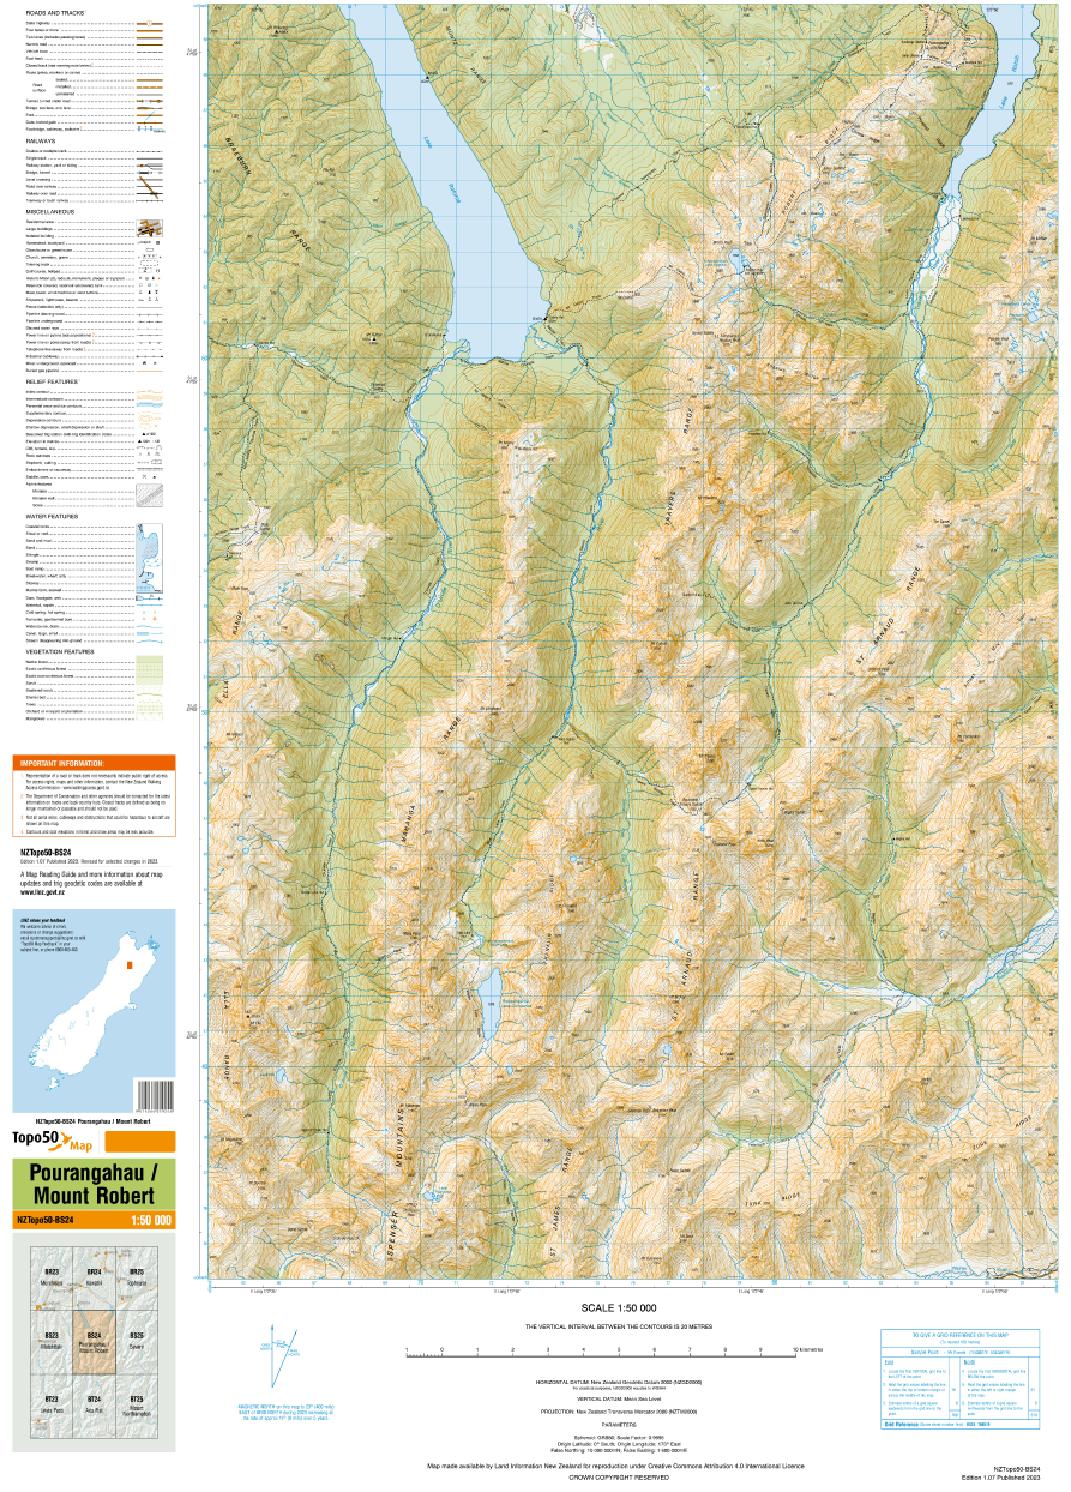 Topo map of Mount Robert